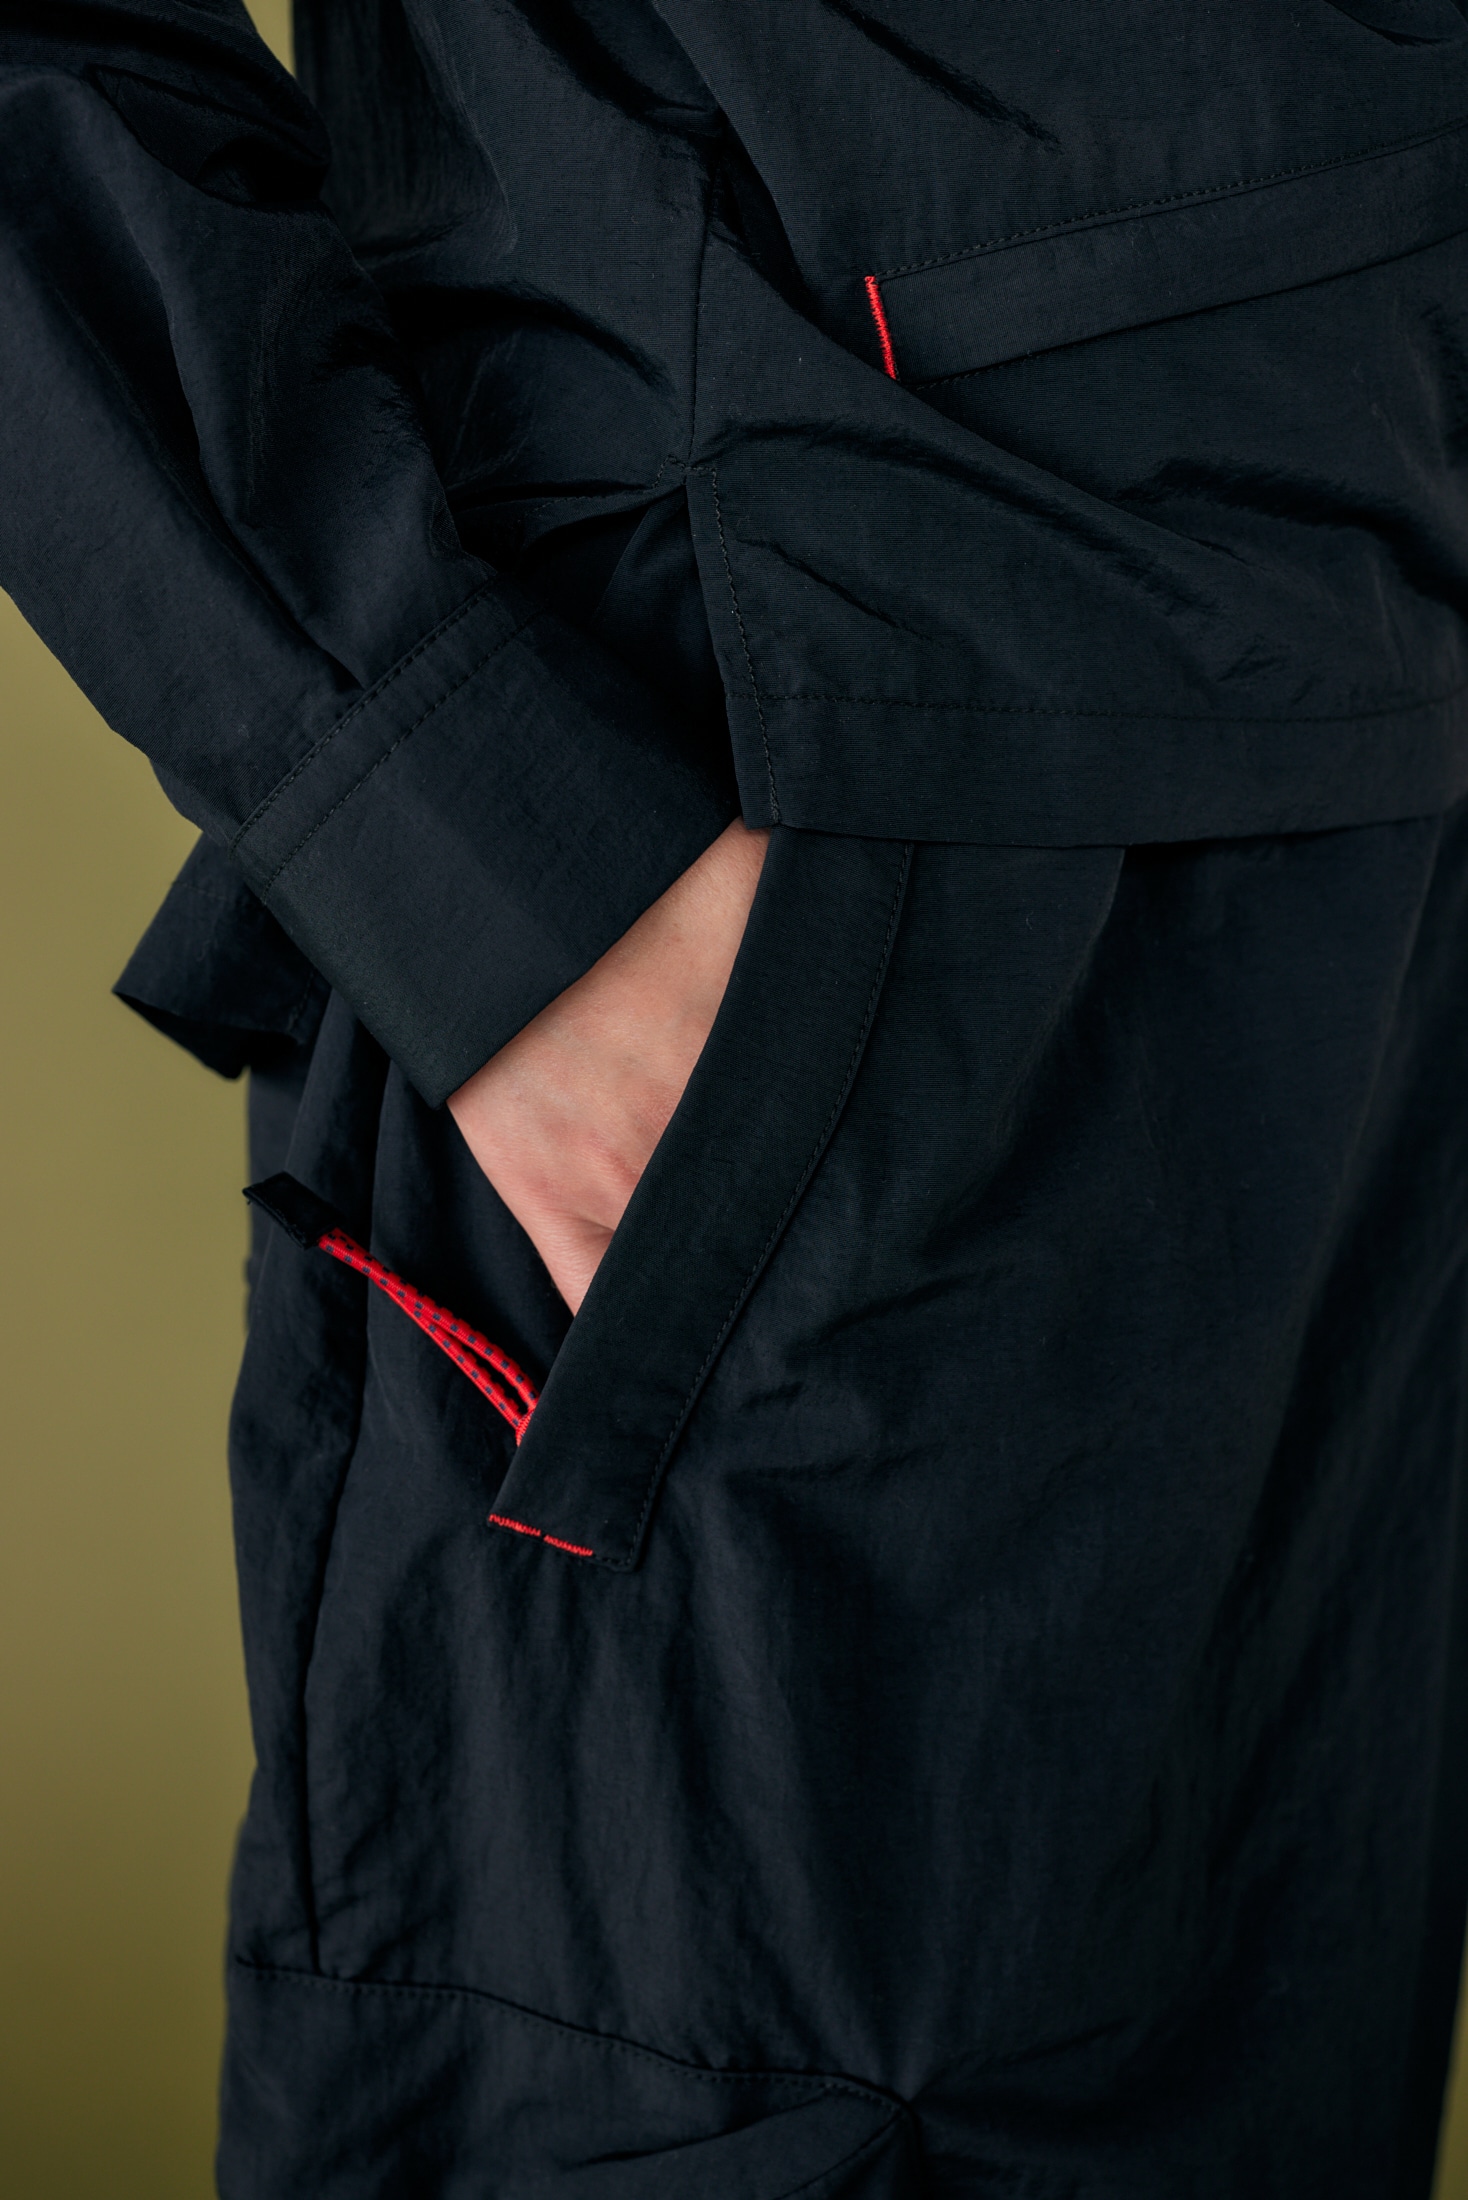 water-repellent drape pocket skirt